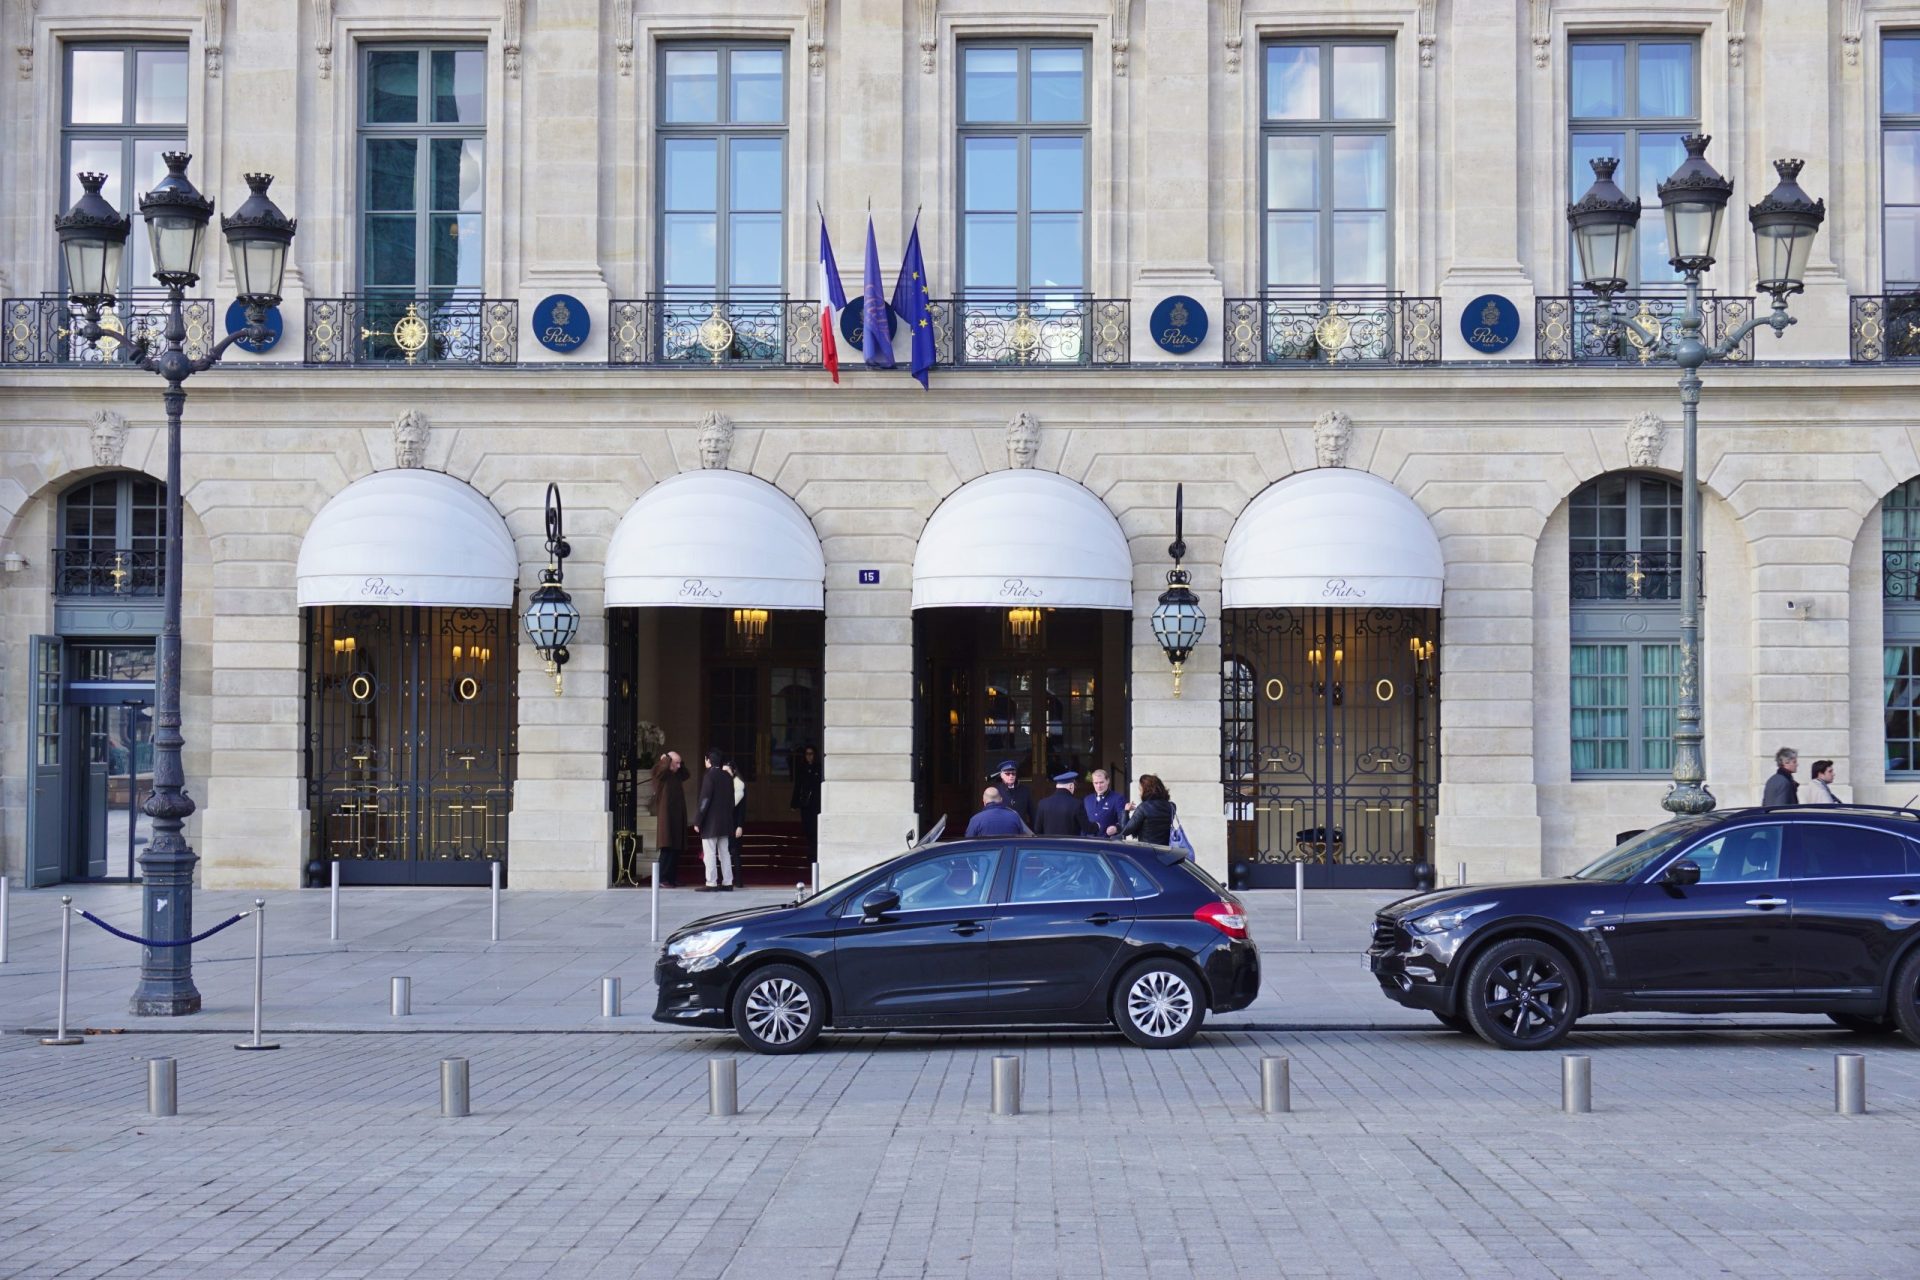 Paris. Hotel assaltado por homens armados com machados